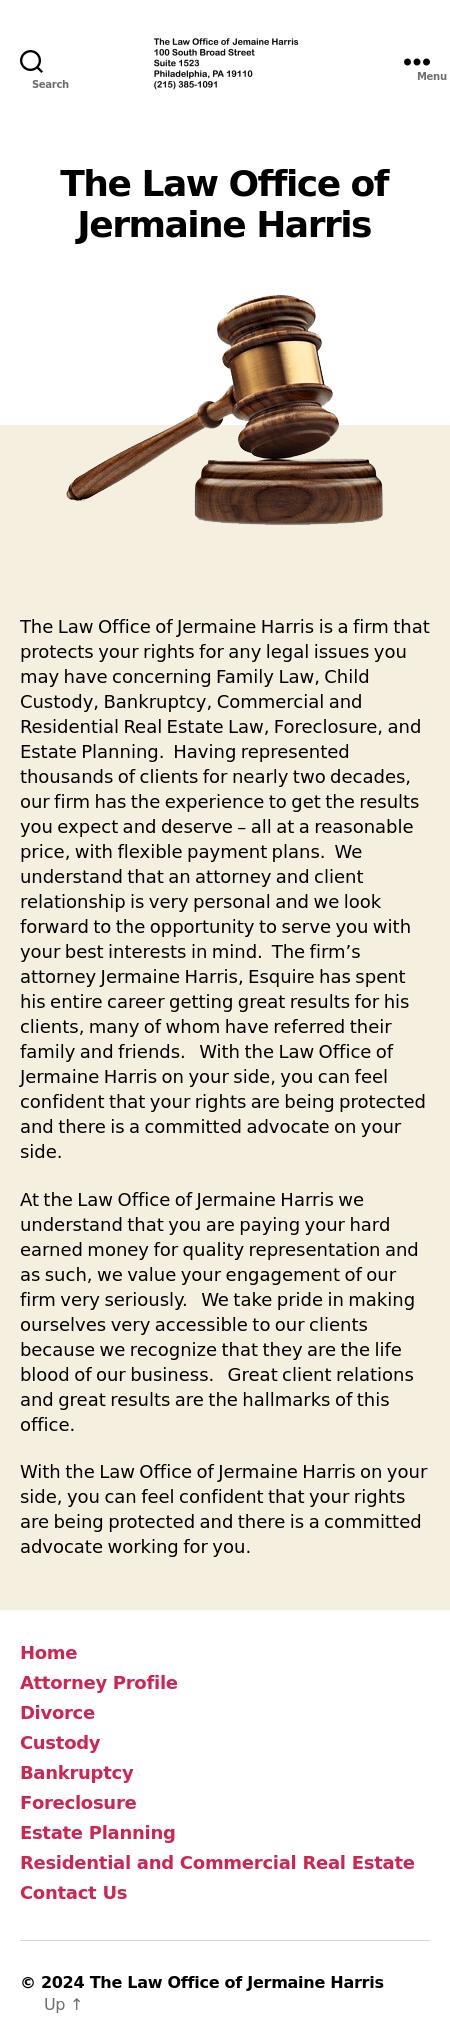 Law Office of Jermaine Harris - Philadelphia PA Lawyers